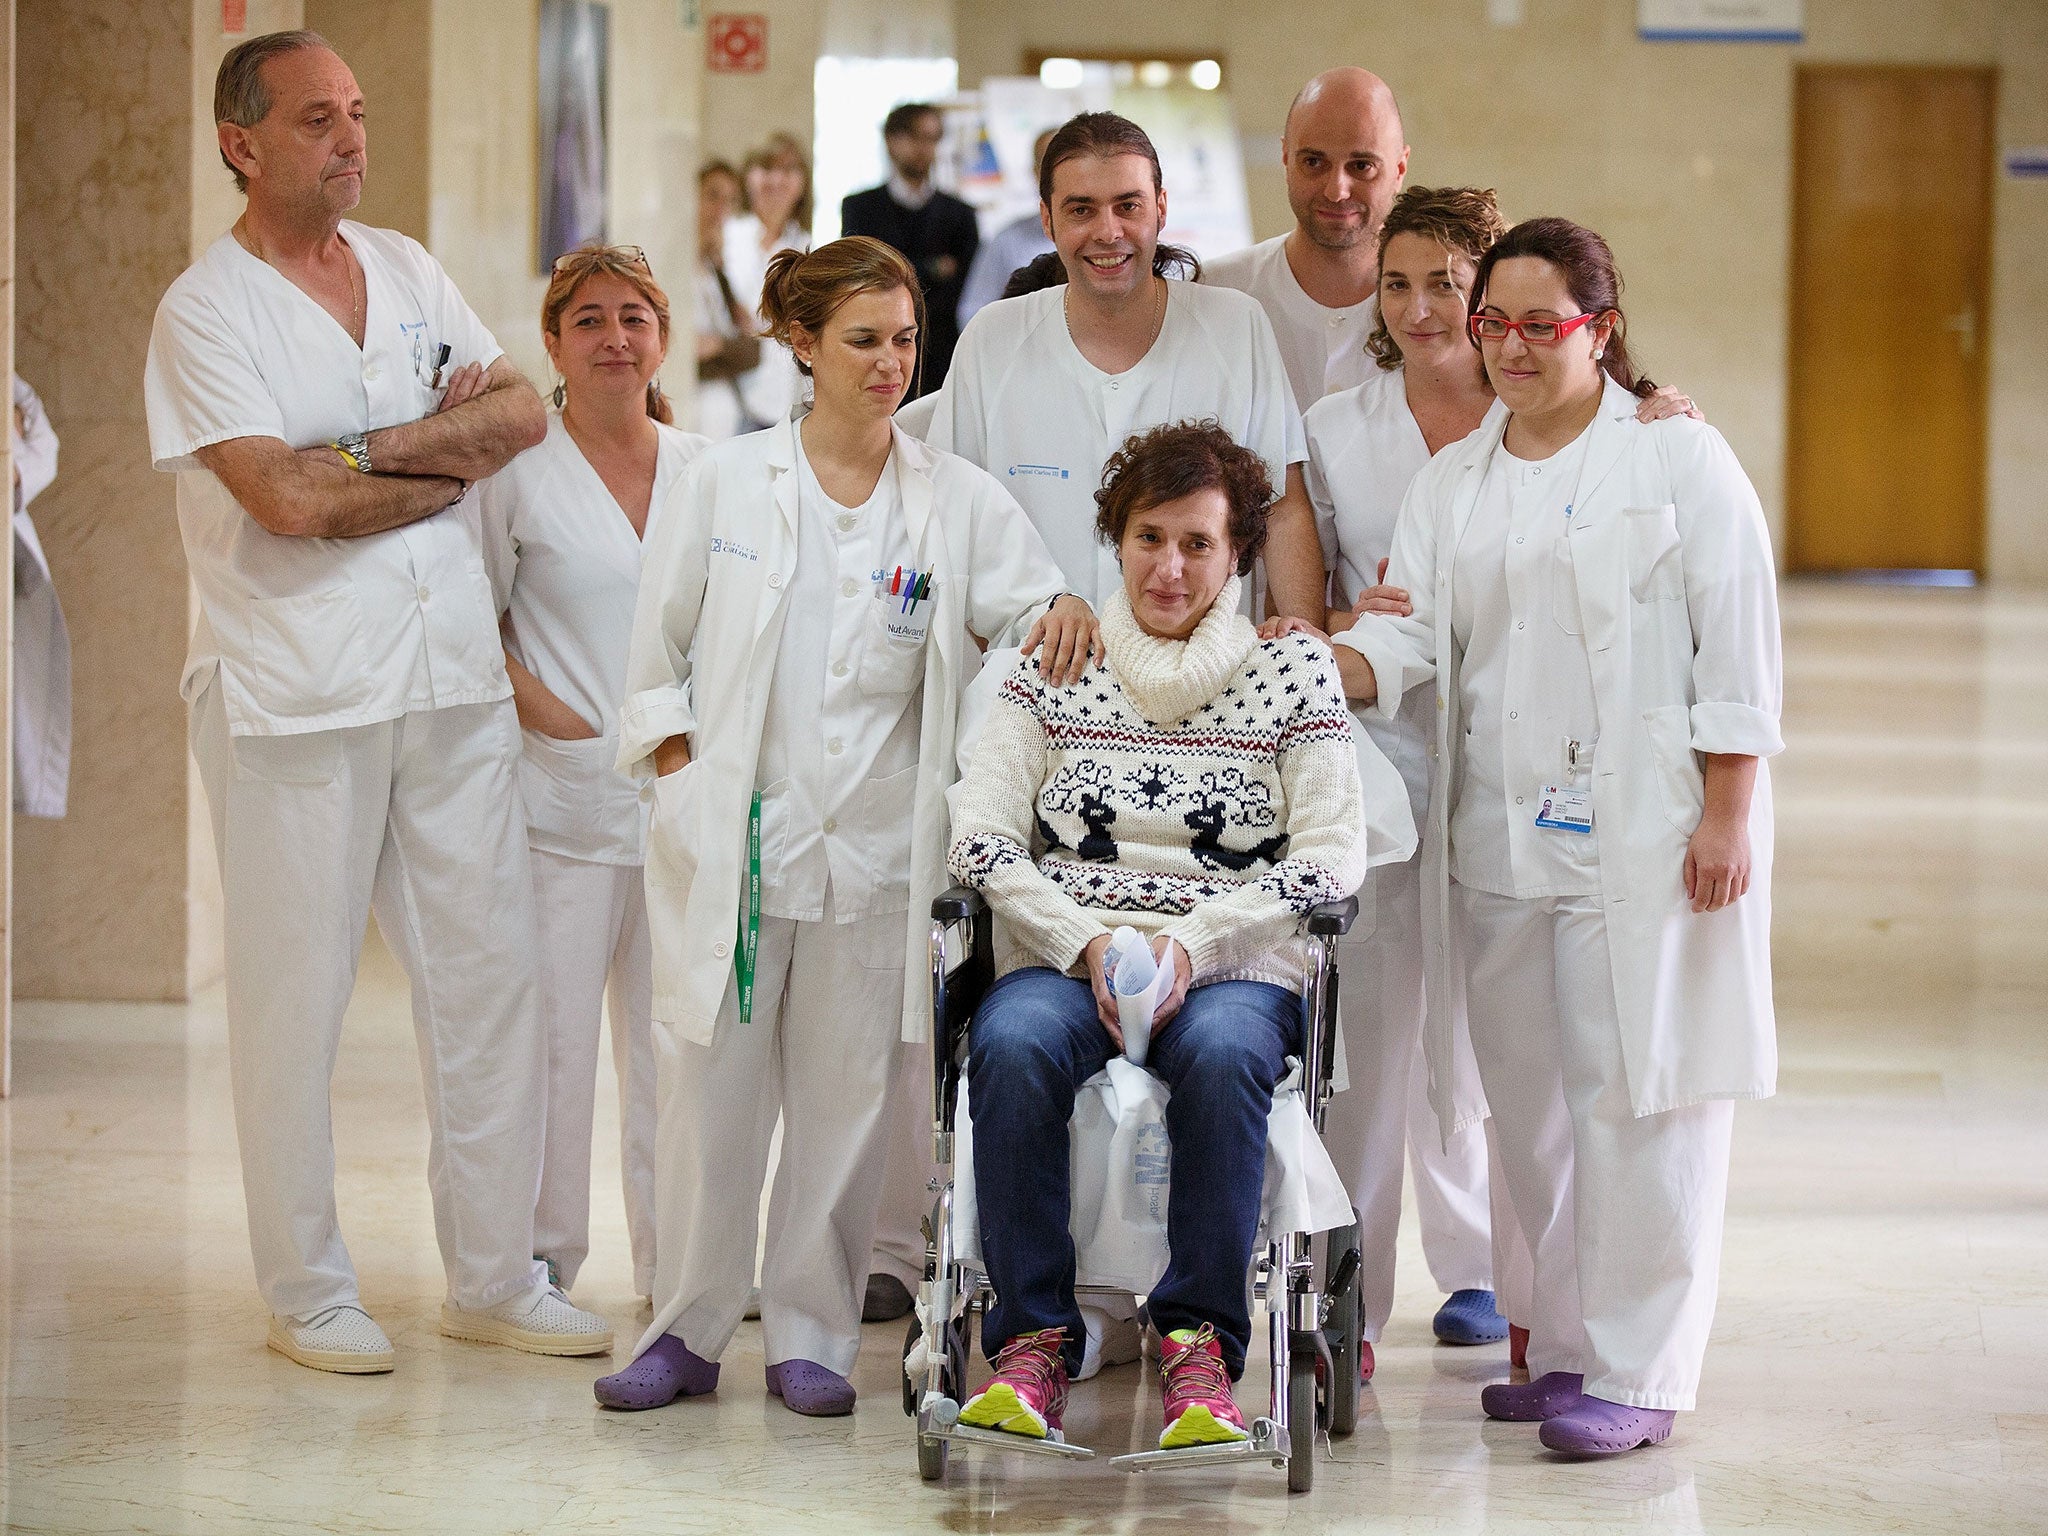 Spanish nurse Teresa Romero leaves Carlos III Hospital after being discharged on 5 November, 2014 in Madrid, Spain